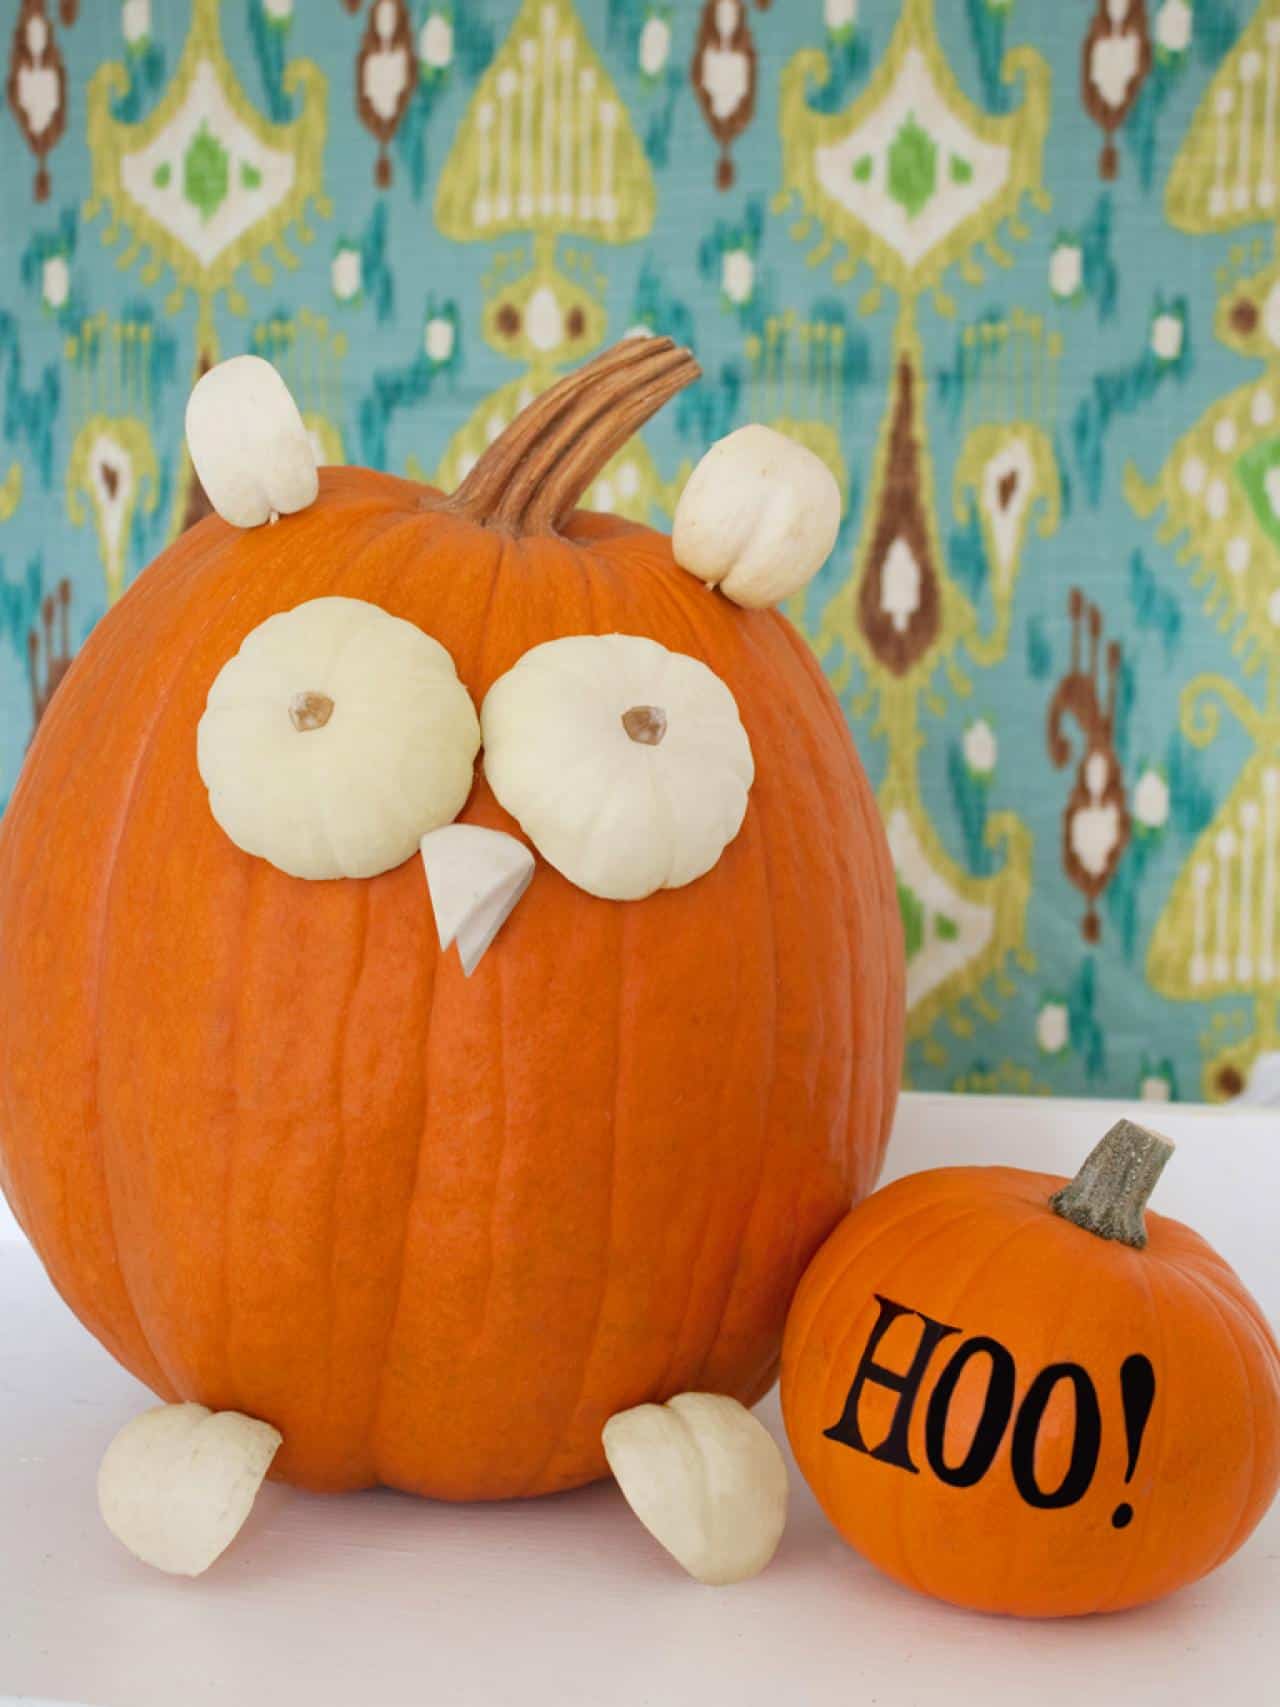 Owl pumpkin made with pumpkin pieces